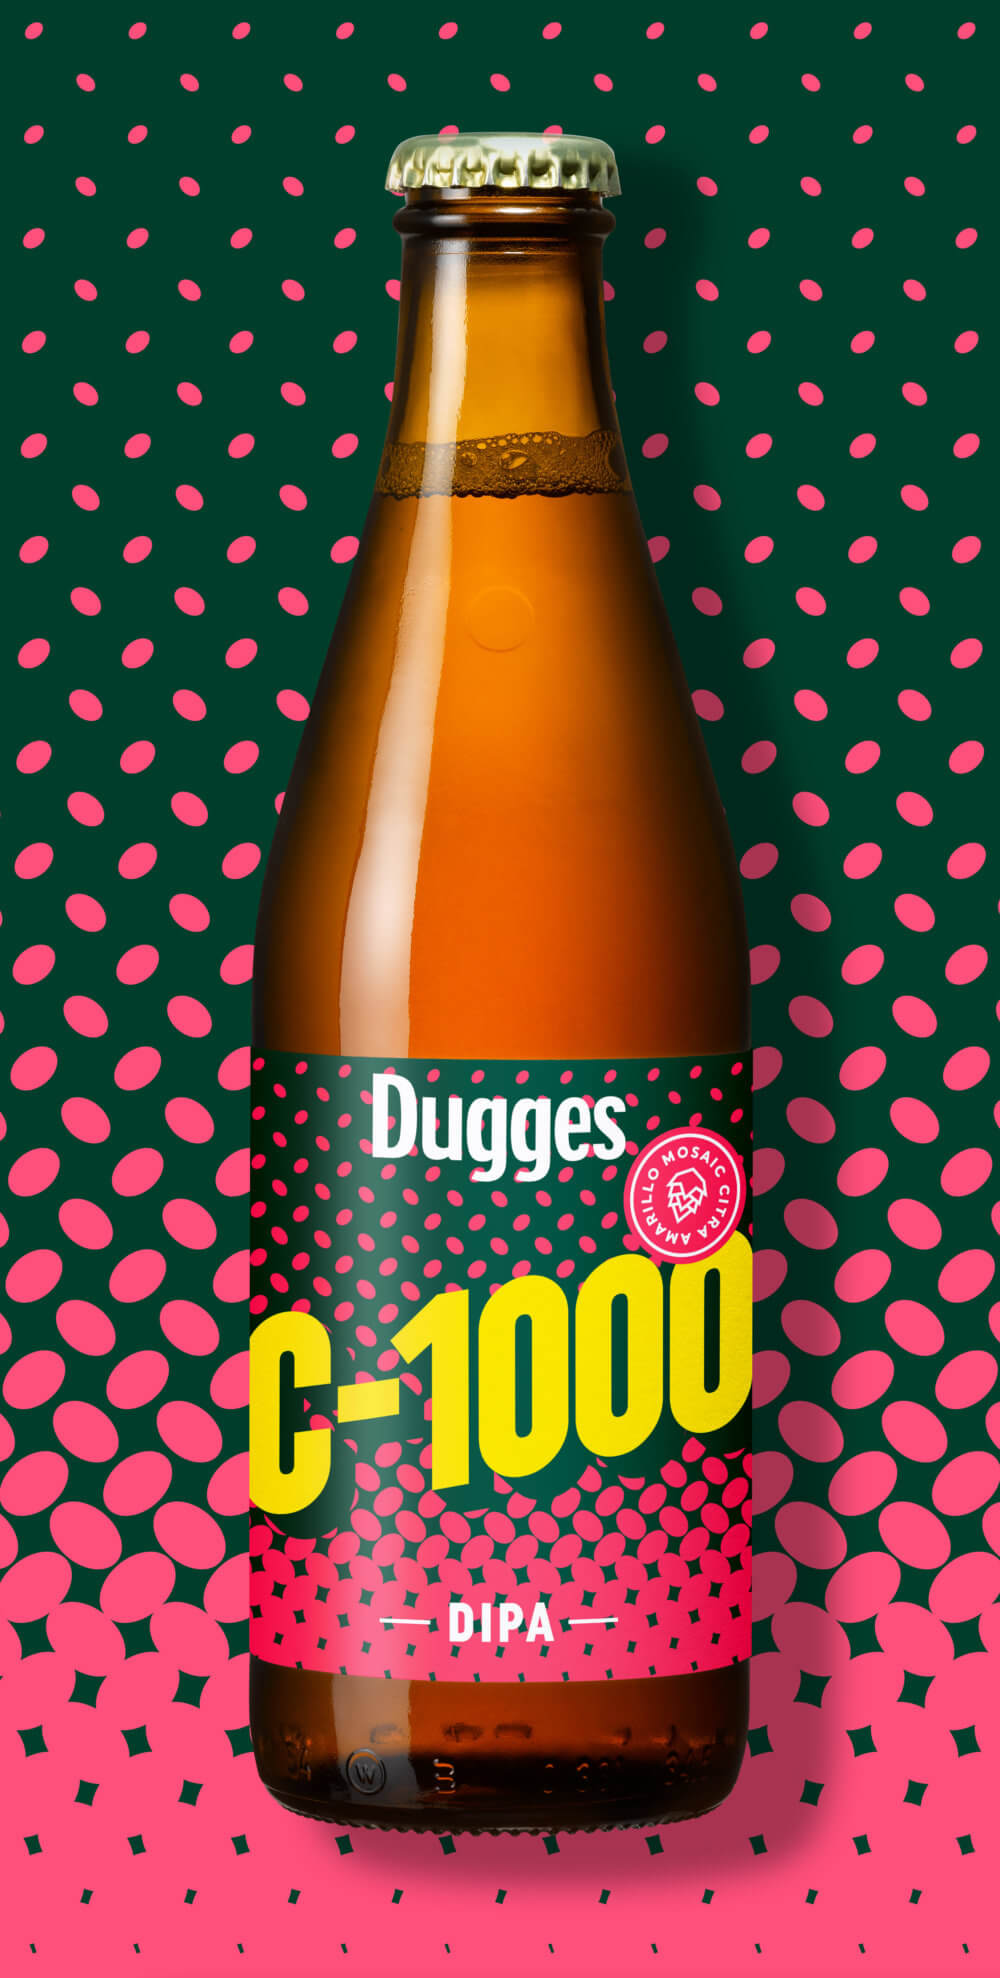 Dugges Bryggeri C-1000 DIPA